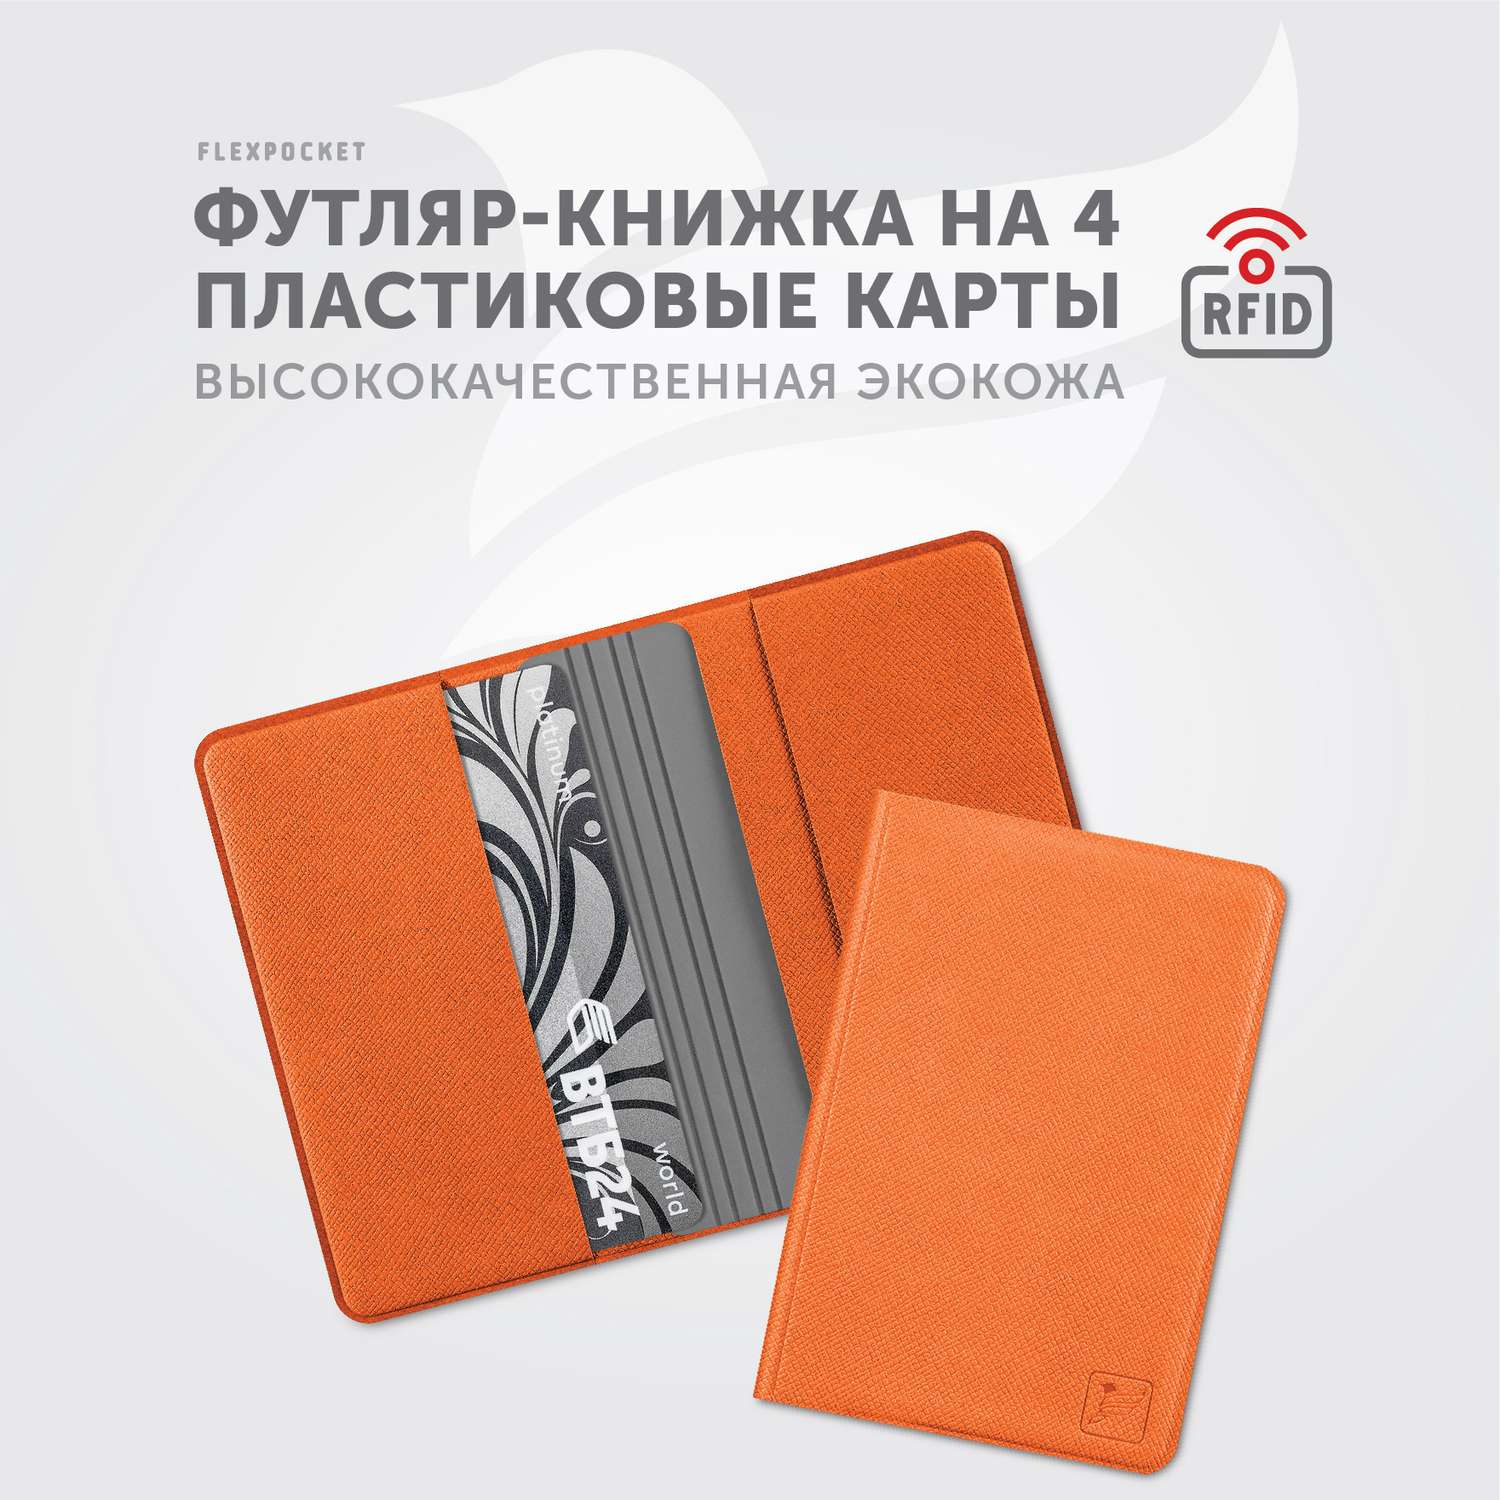 Картхолдер с RFID-защитой Flexpocket FKKR-4E/Оранжево-серый - фото 2